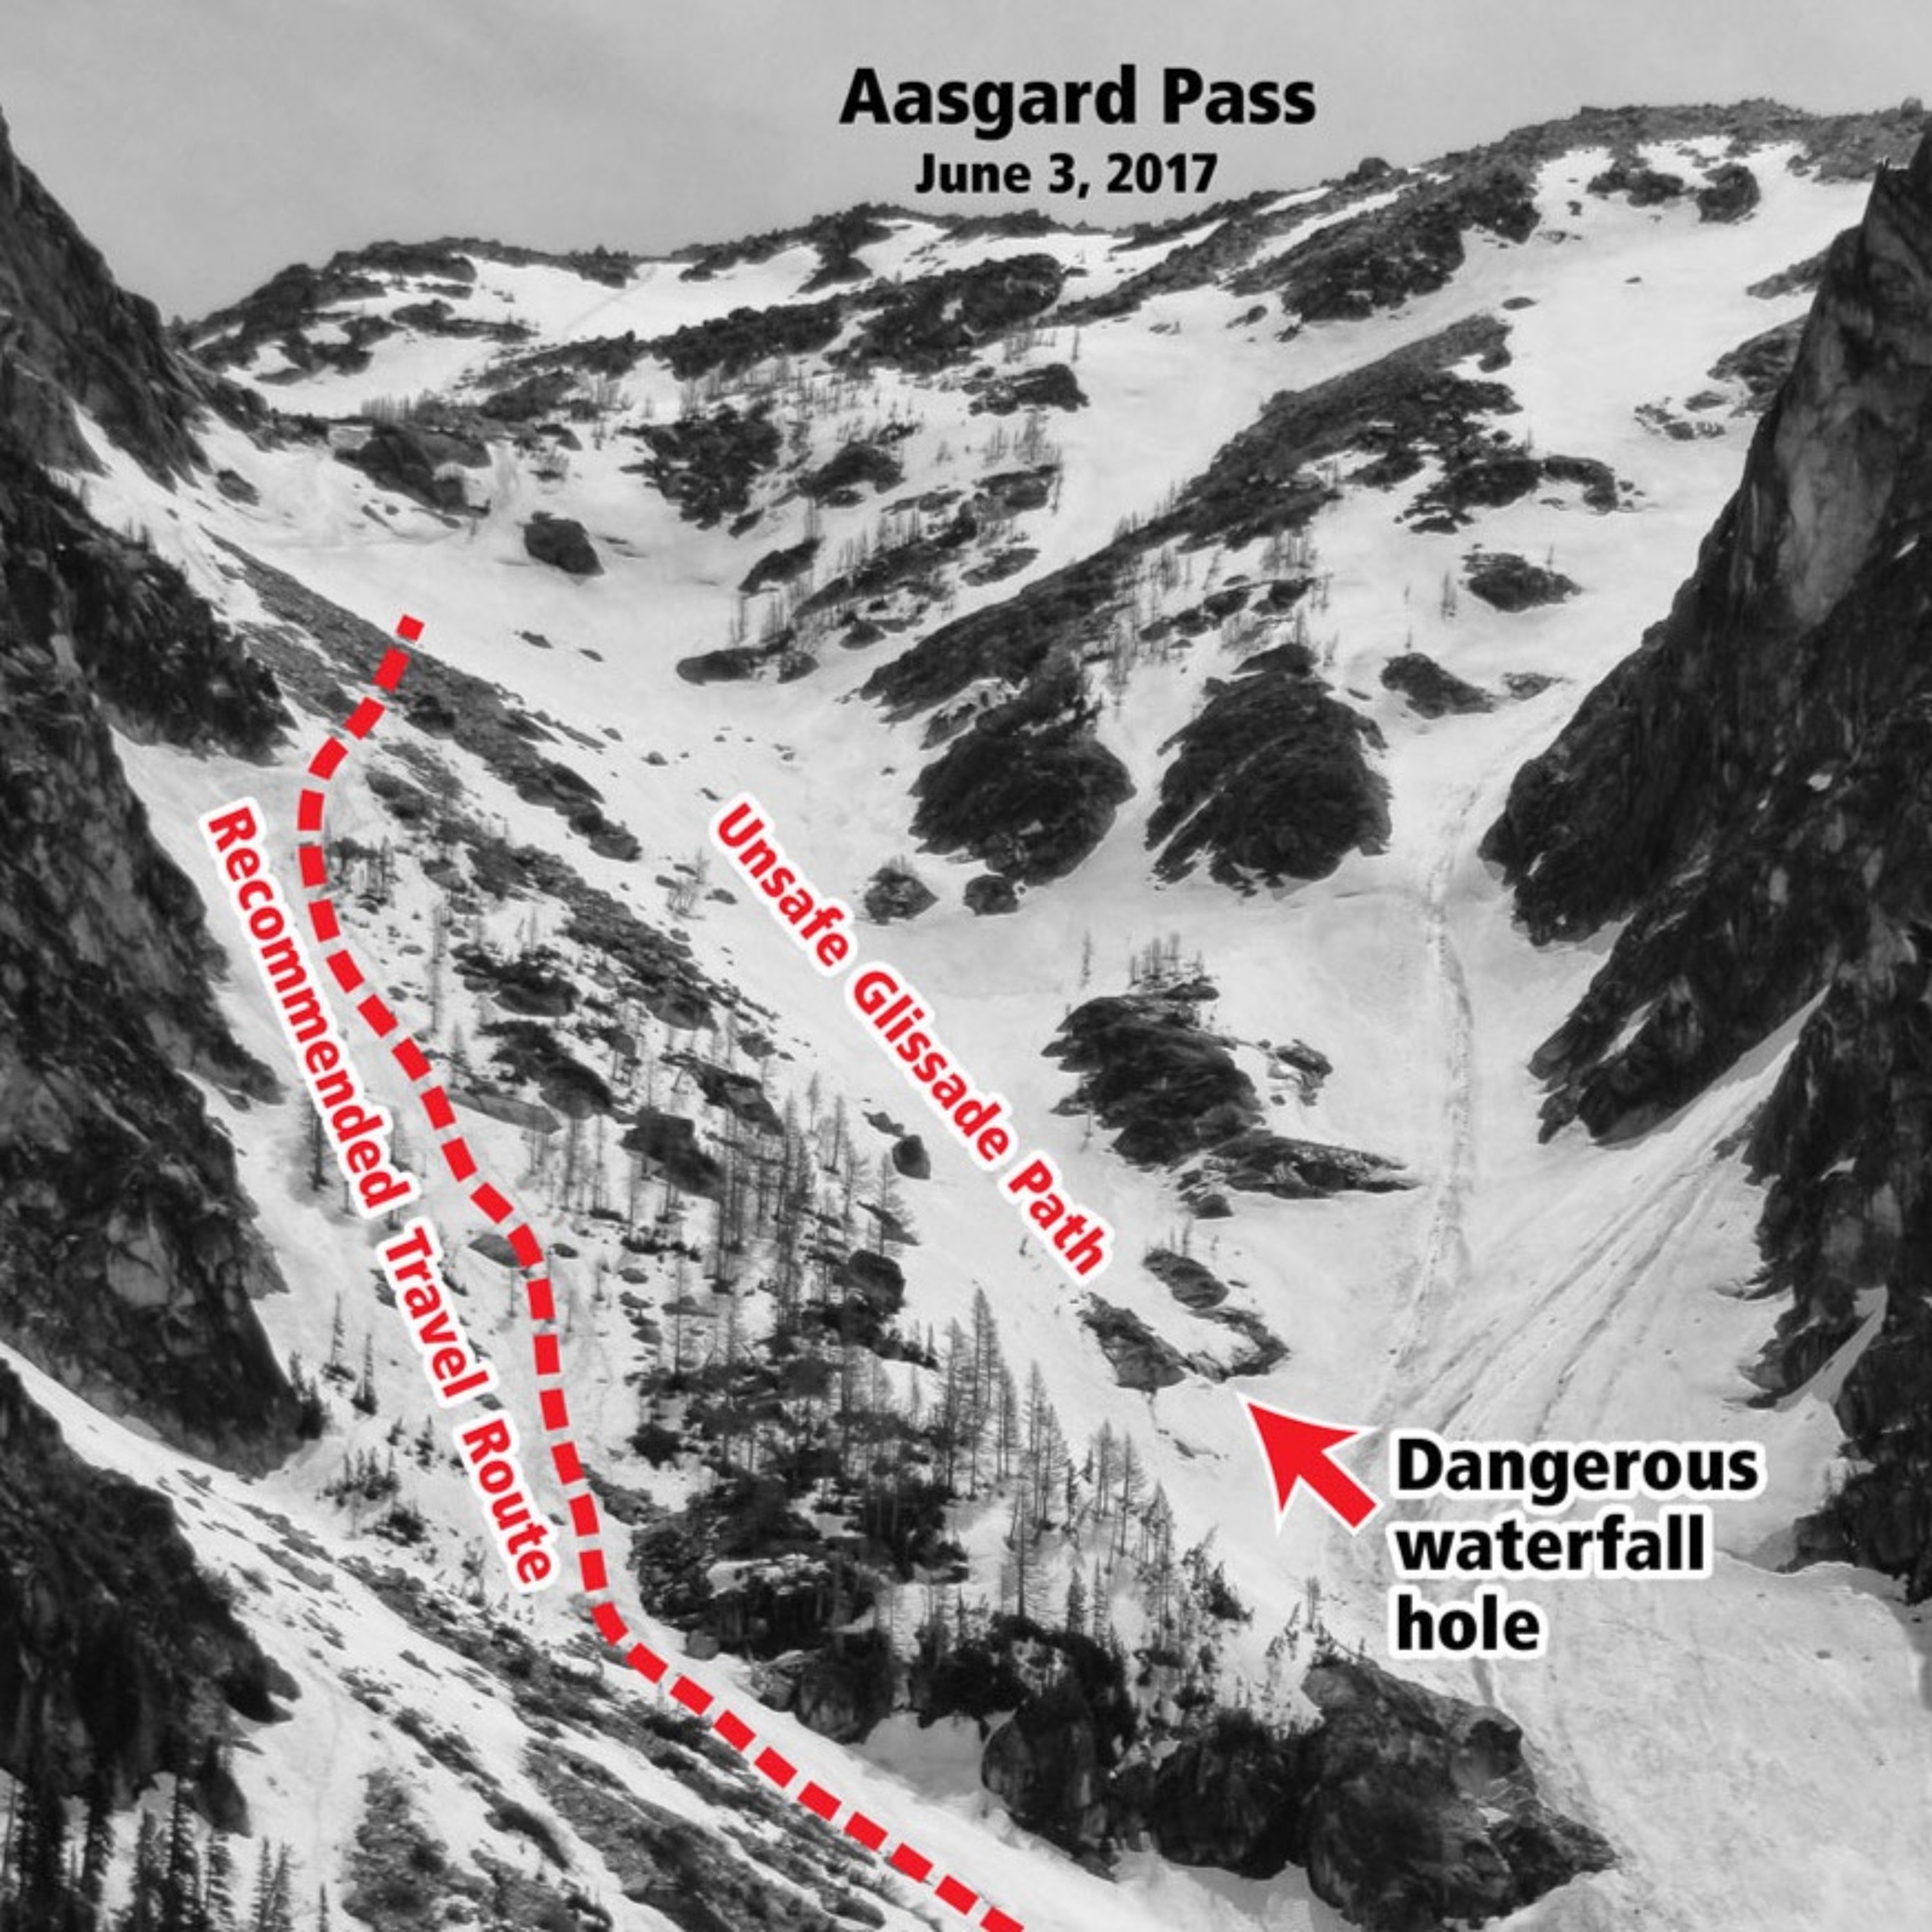 Ep 25 - The Deadly Hole On Aasgard Pass - Steve Smith